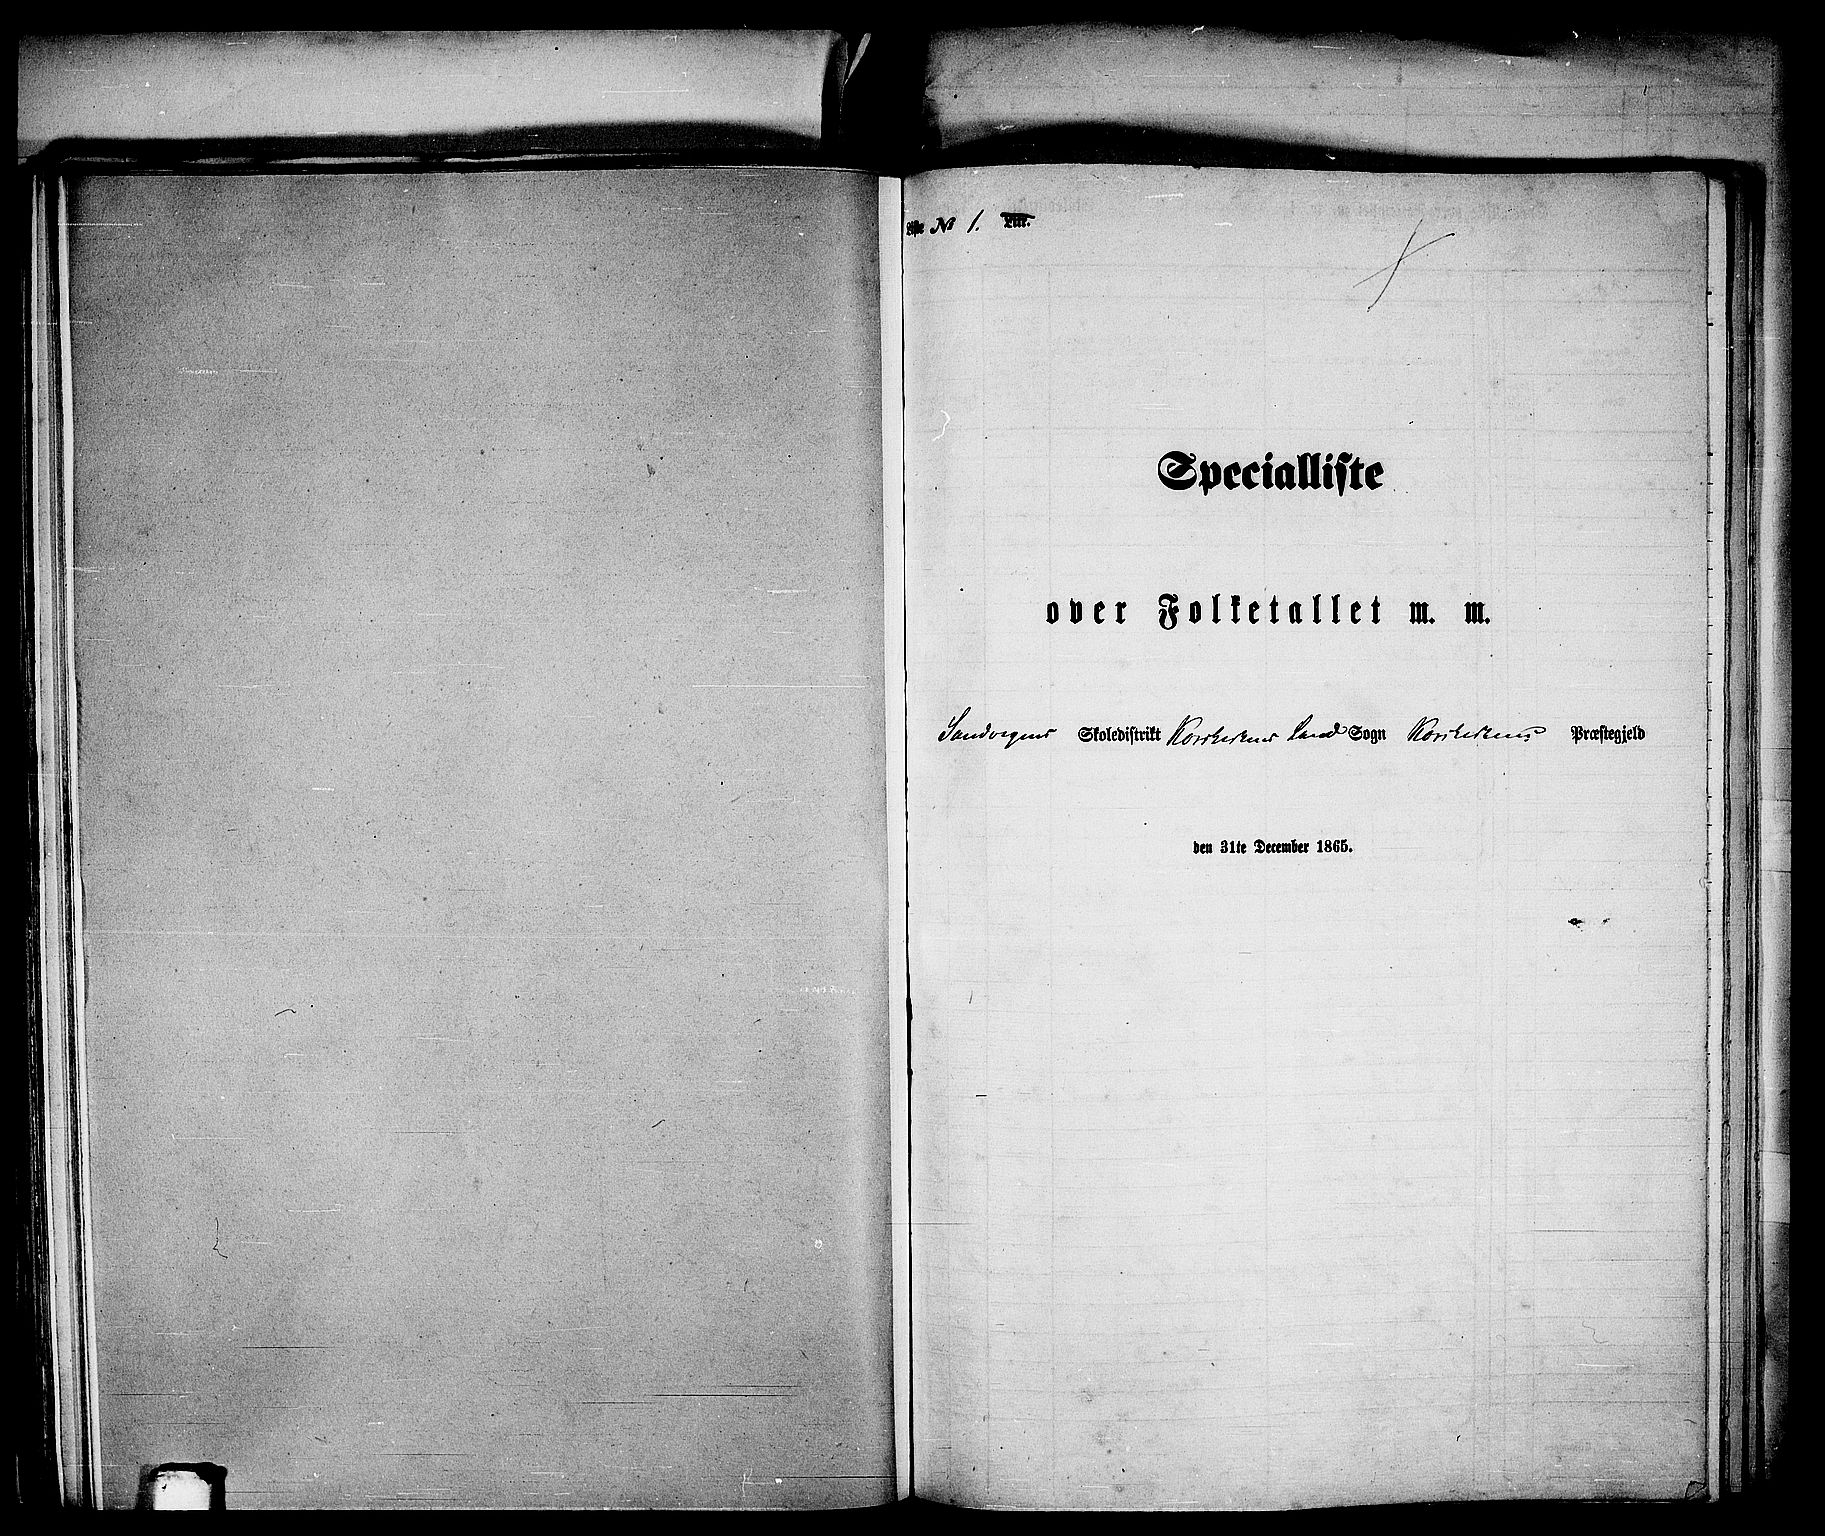 RA, Folketelling 1865 for 1281L Bergen Landdistrikt, Domkirkens landsokn og Korskirkens landsokn, 1865, s. 317